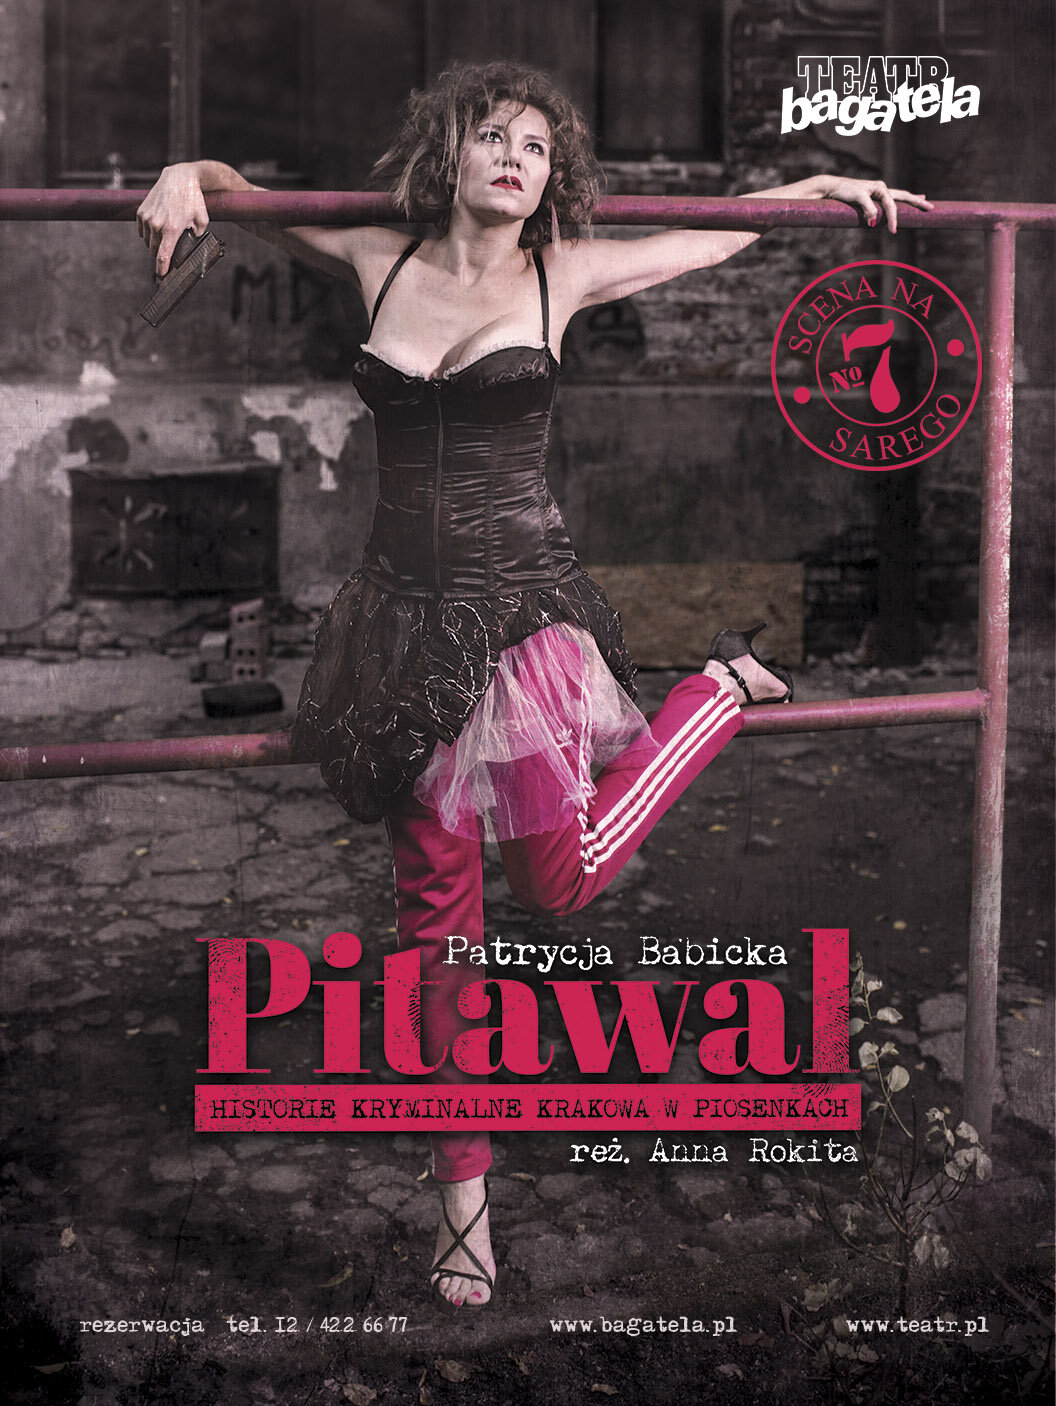 Plakat do spektaklu Pitawal -Historie kryminalne Krakowa w piosenkach